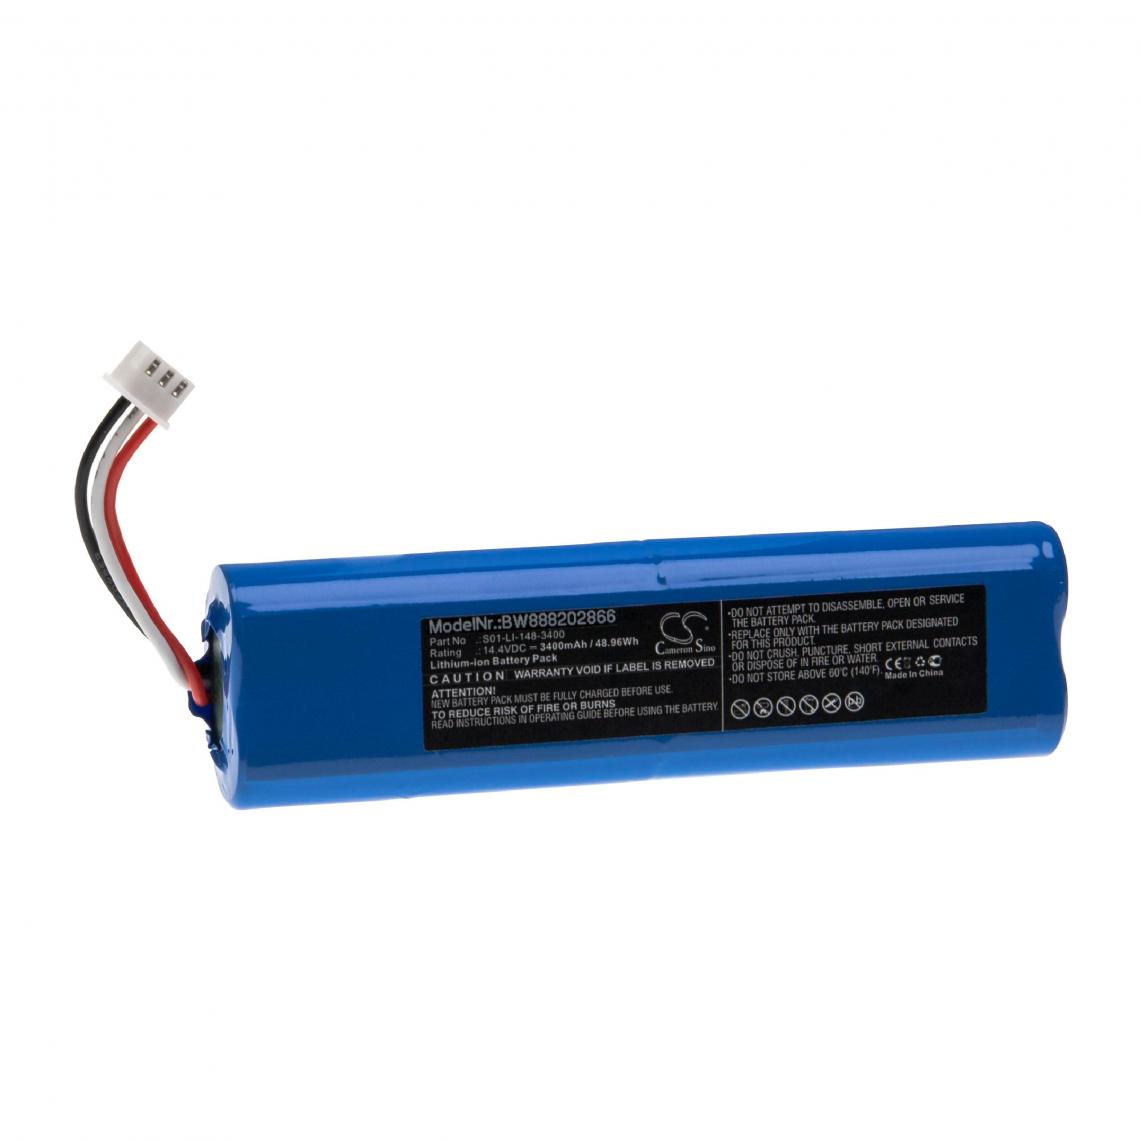 Vhbw - vhbw Batterie remplacement pour Ecovacs S01-LI-148-2600, S01-LI-148-3200, S01-LI-148-3400, S09-LI-148-3200 pour aspirateur (3400mAh, 14,4V, Li-ion) - Accessoire entretien des sols